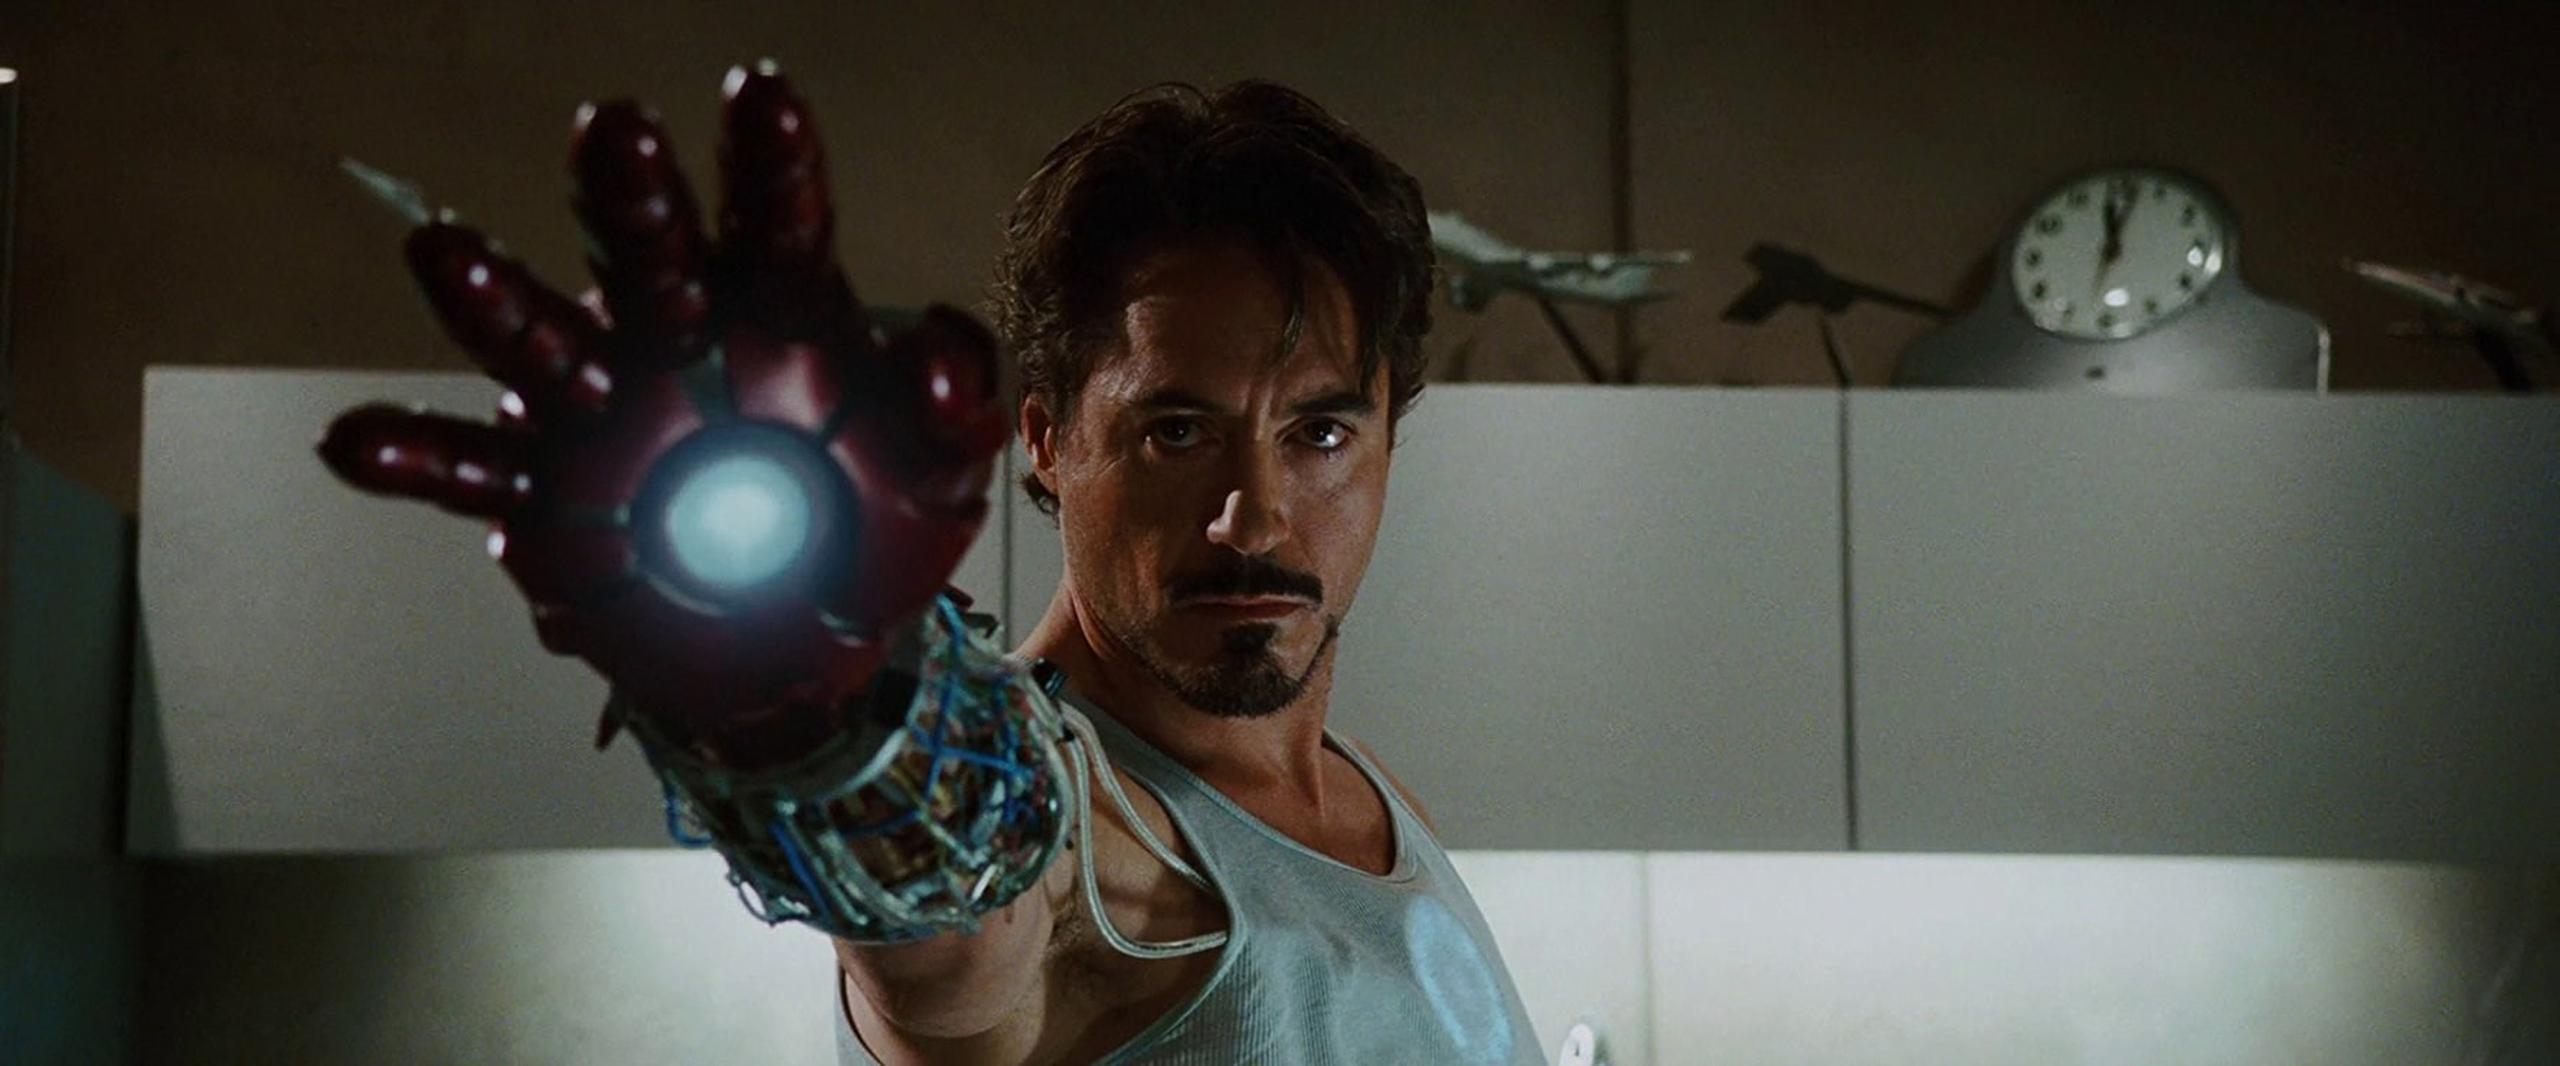 1. “Iron Man” (2008) – (IMDB) La primera entrega del universo de películas de Marvel muestra el "nacimiento" de Iron Man, el heróico personaje del multimillonario Tony Stark.